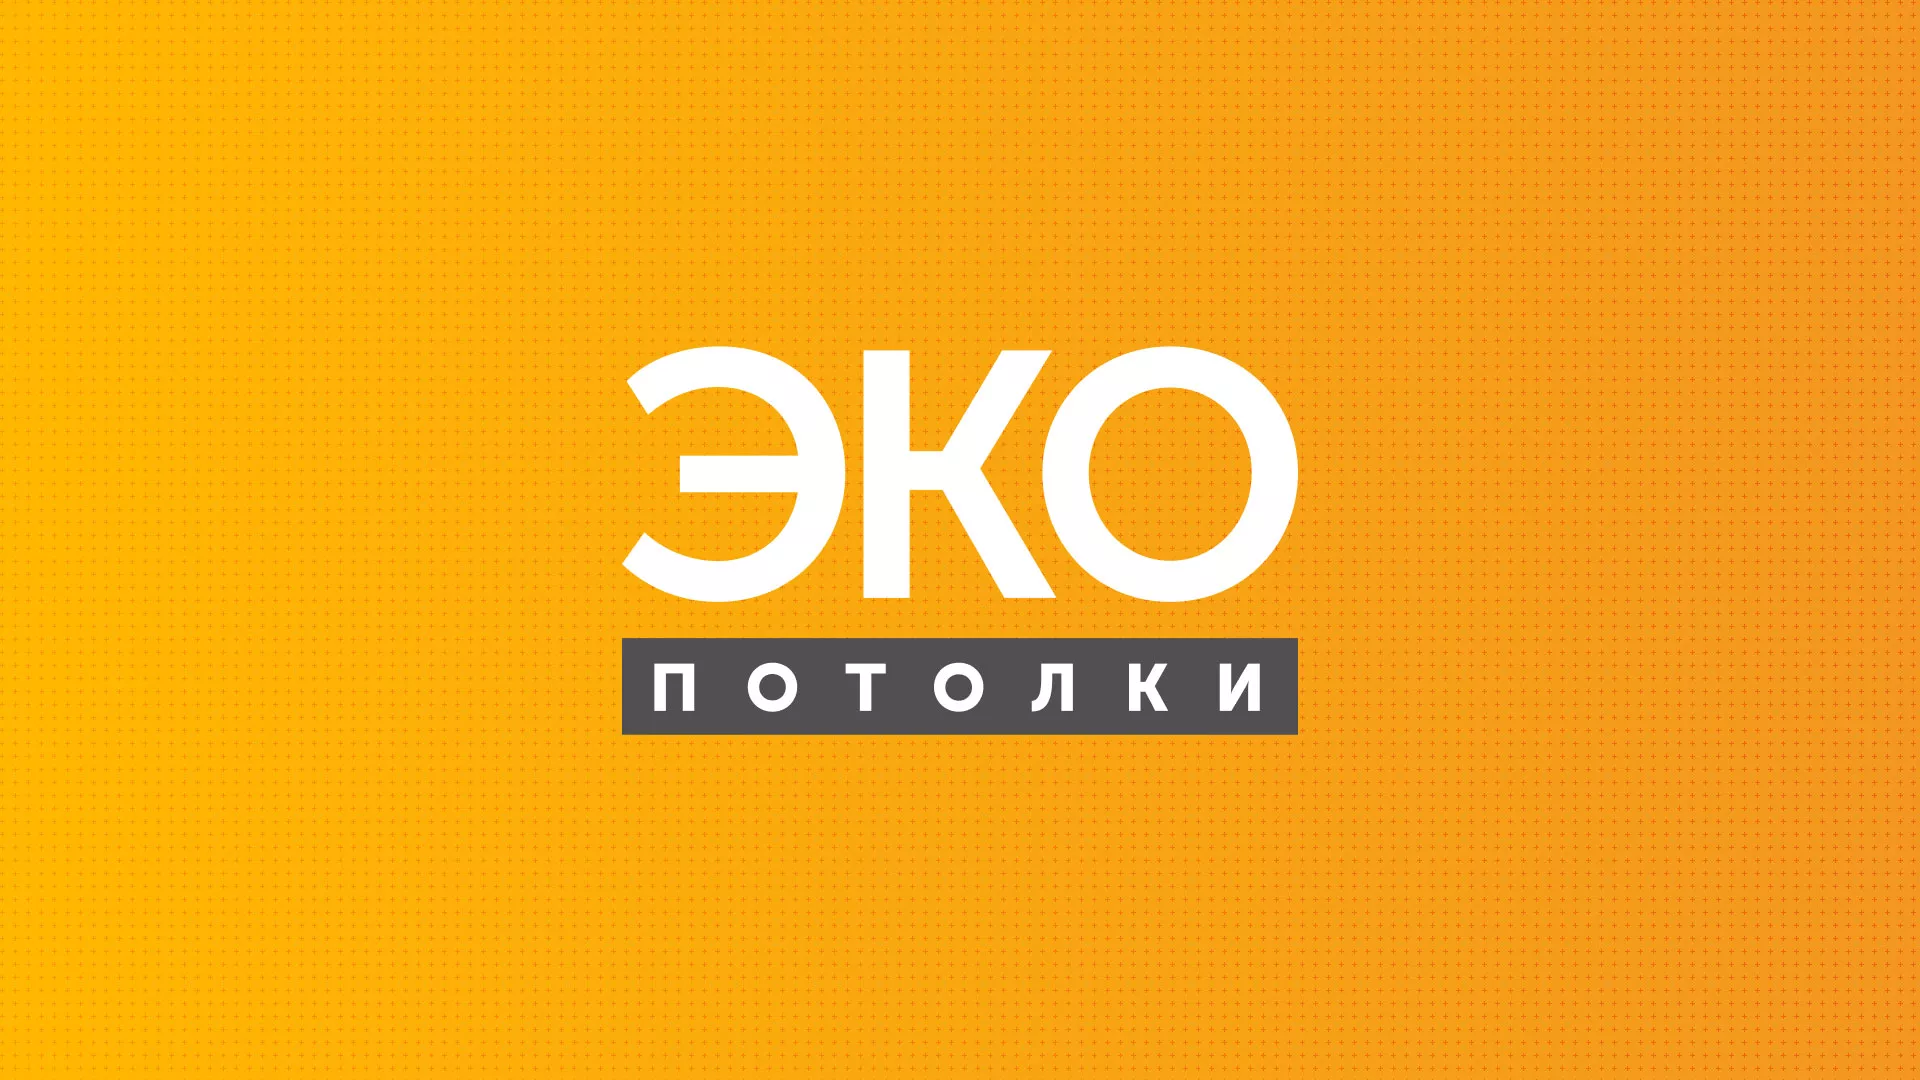 Разработка сайта по натяжным потолкам «Эко Потолки» в Ипатово